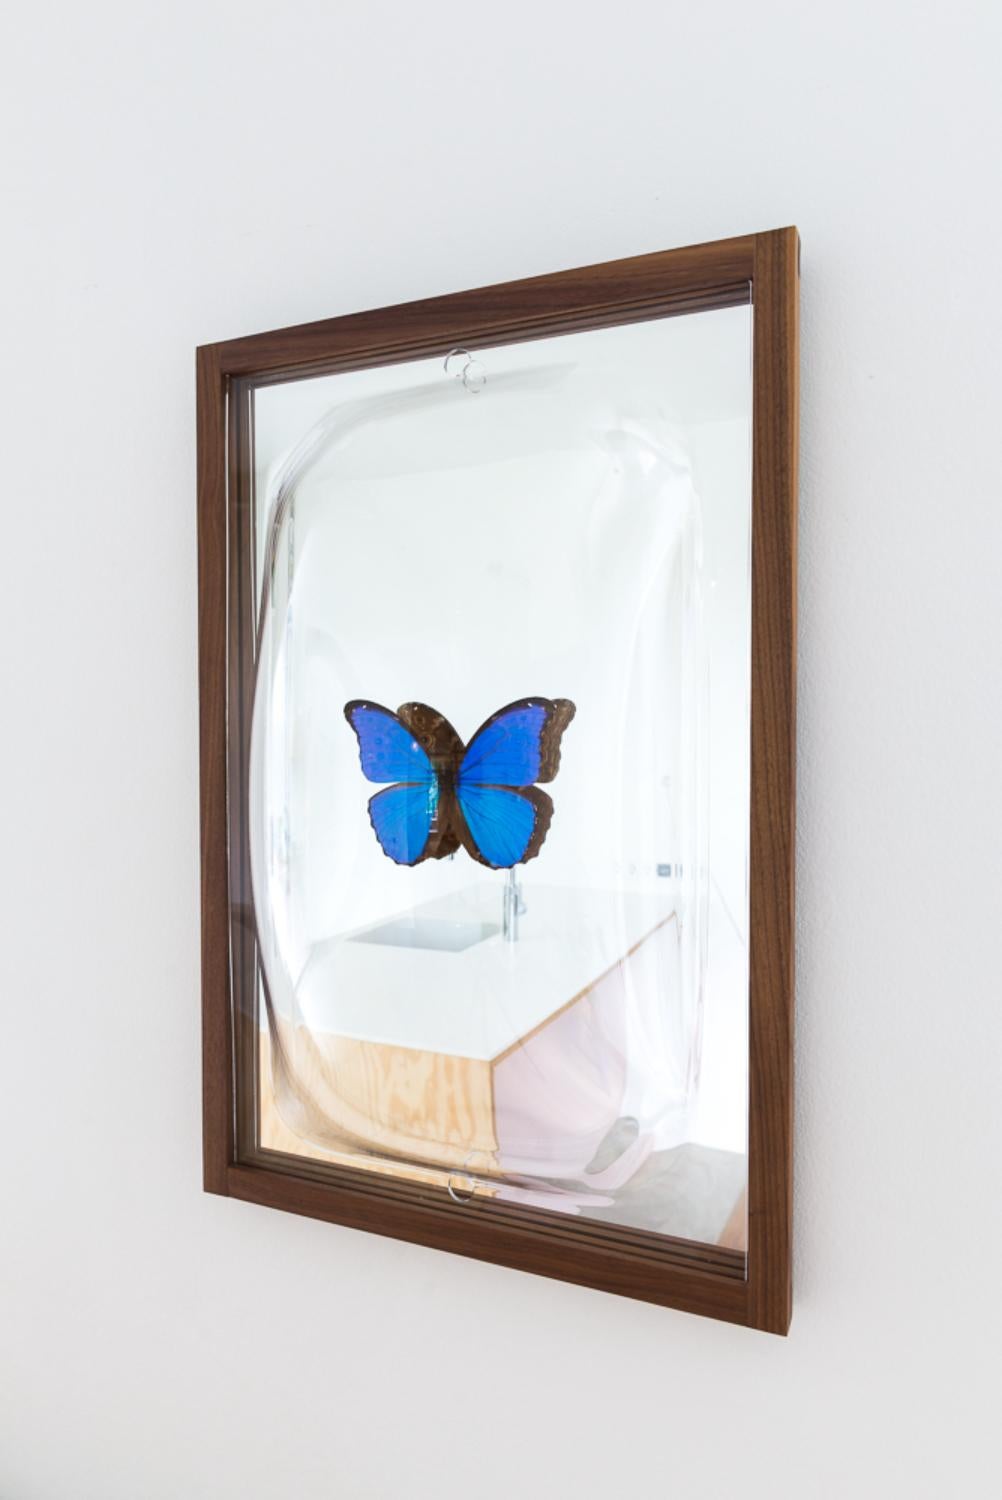 Long Showcase-Spiegel von Studio Thier & van Daalen
Abmessungen: B 42 x T 15 x H 65 cm
MATERIALIEN: Esche, recyceltes Acrylglas.
Auch verfügbar: Optionale Glasablage (nicht im Lieferumfang des Spiegels enthalten),

Diese eleganten Spiegel mit